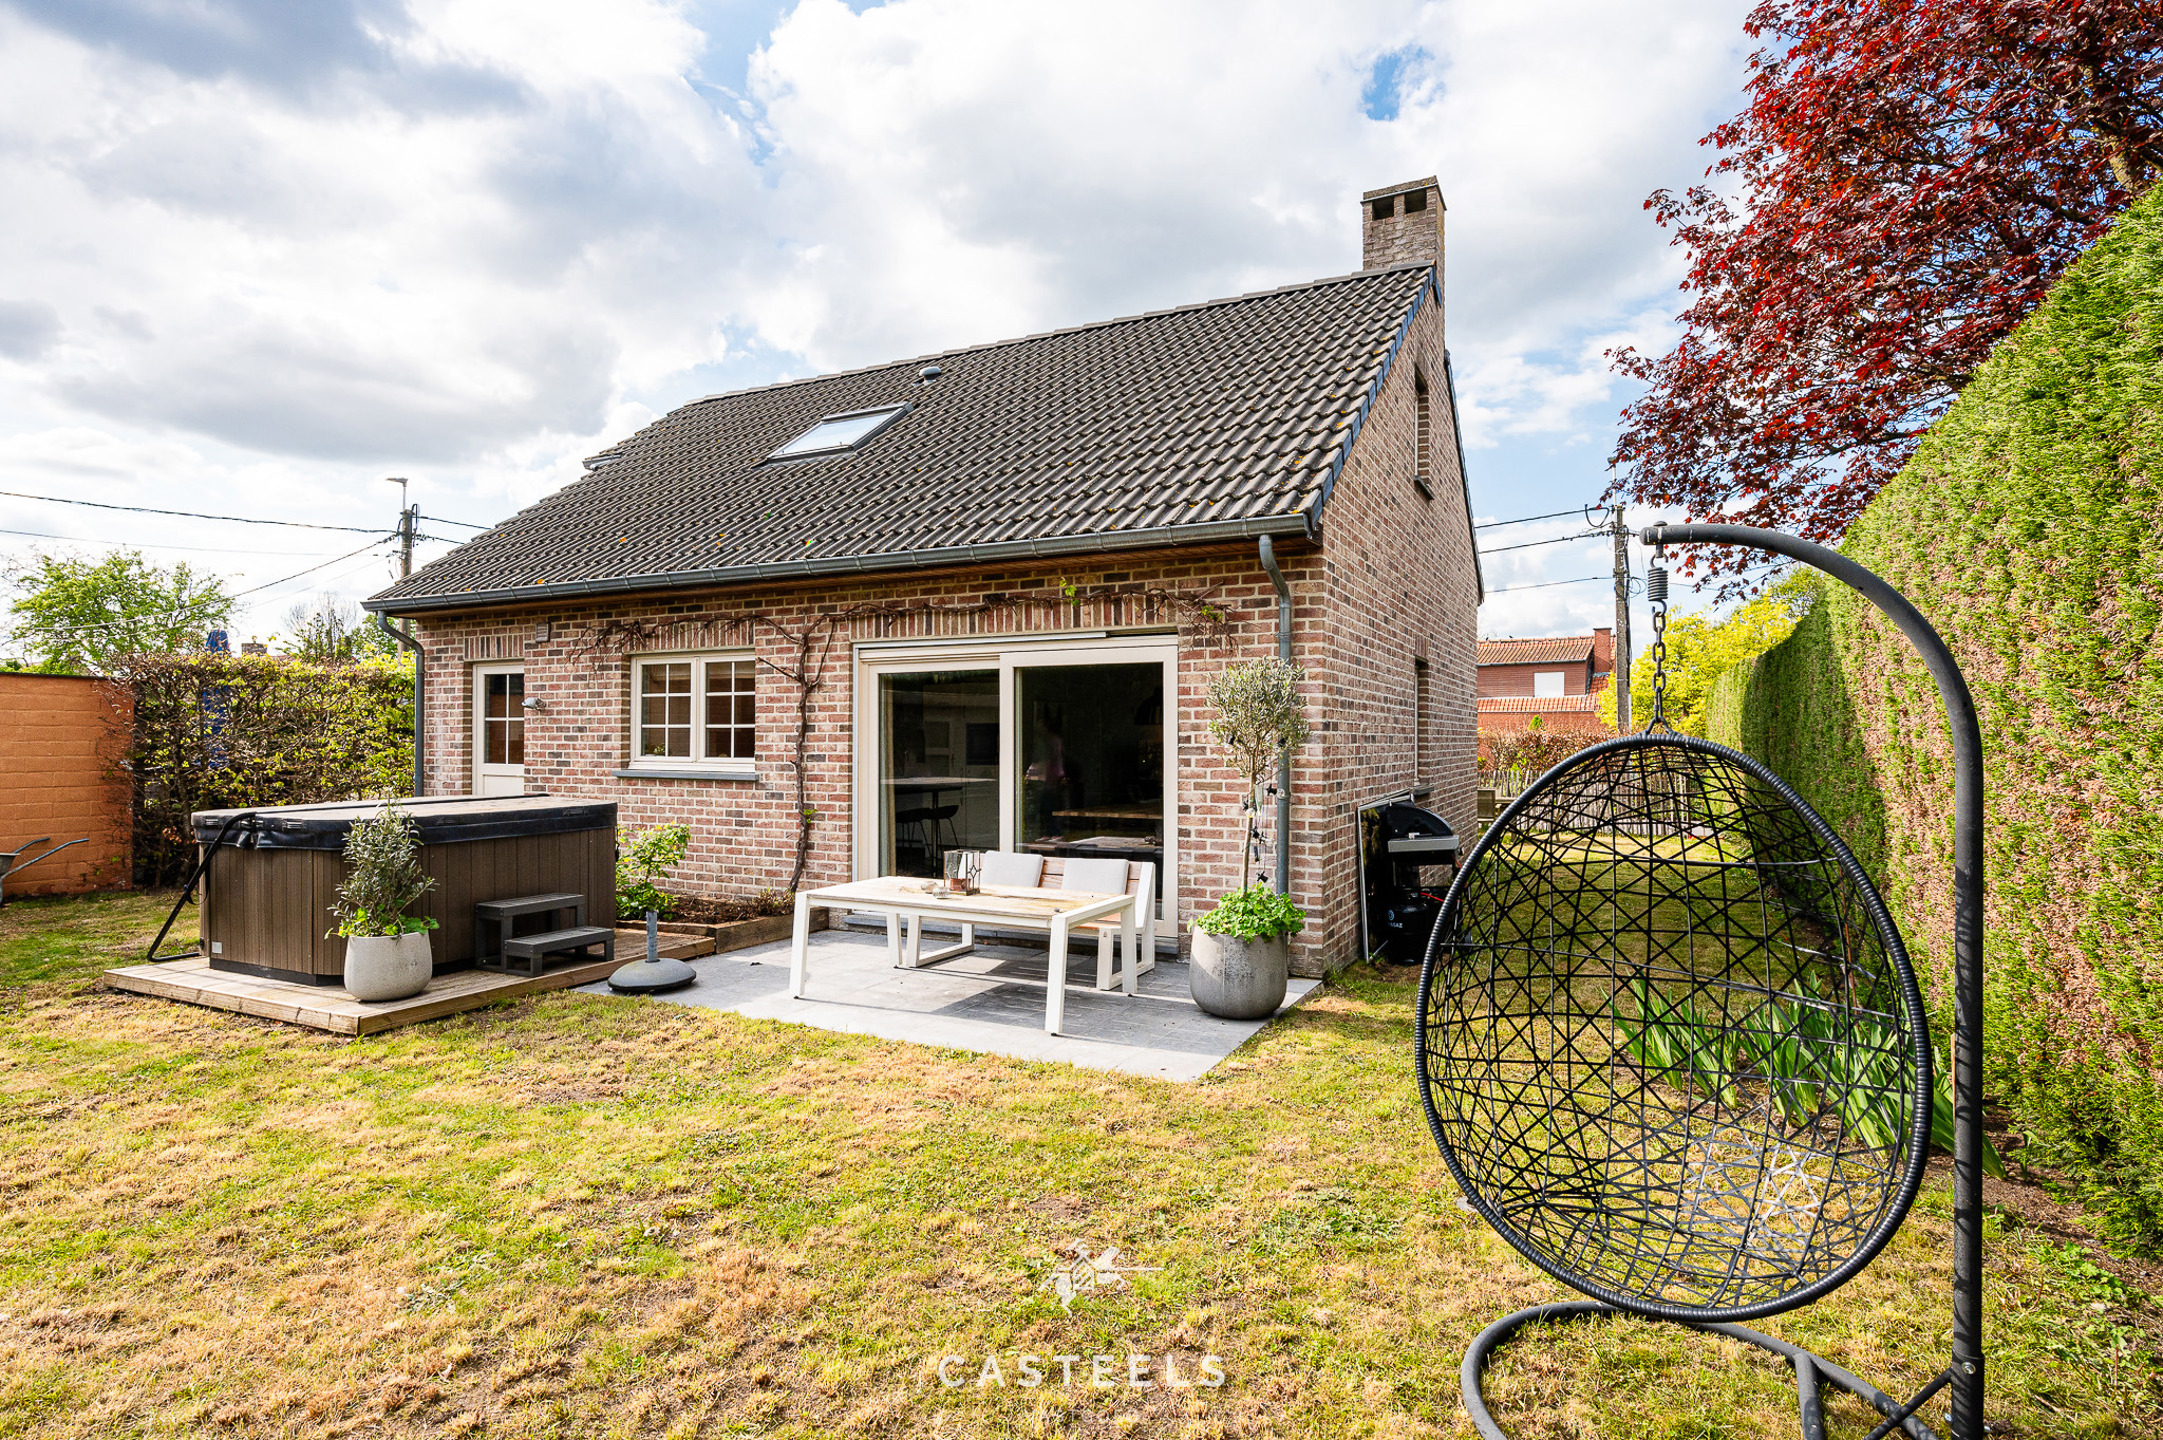 Afbeelding Charmante woning met tuin in Destelbergen - Casteels Vastgoed